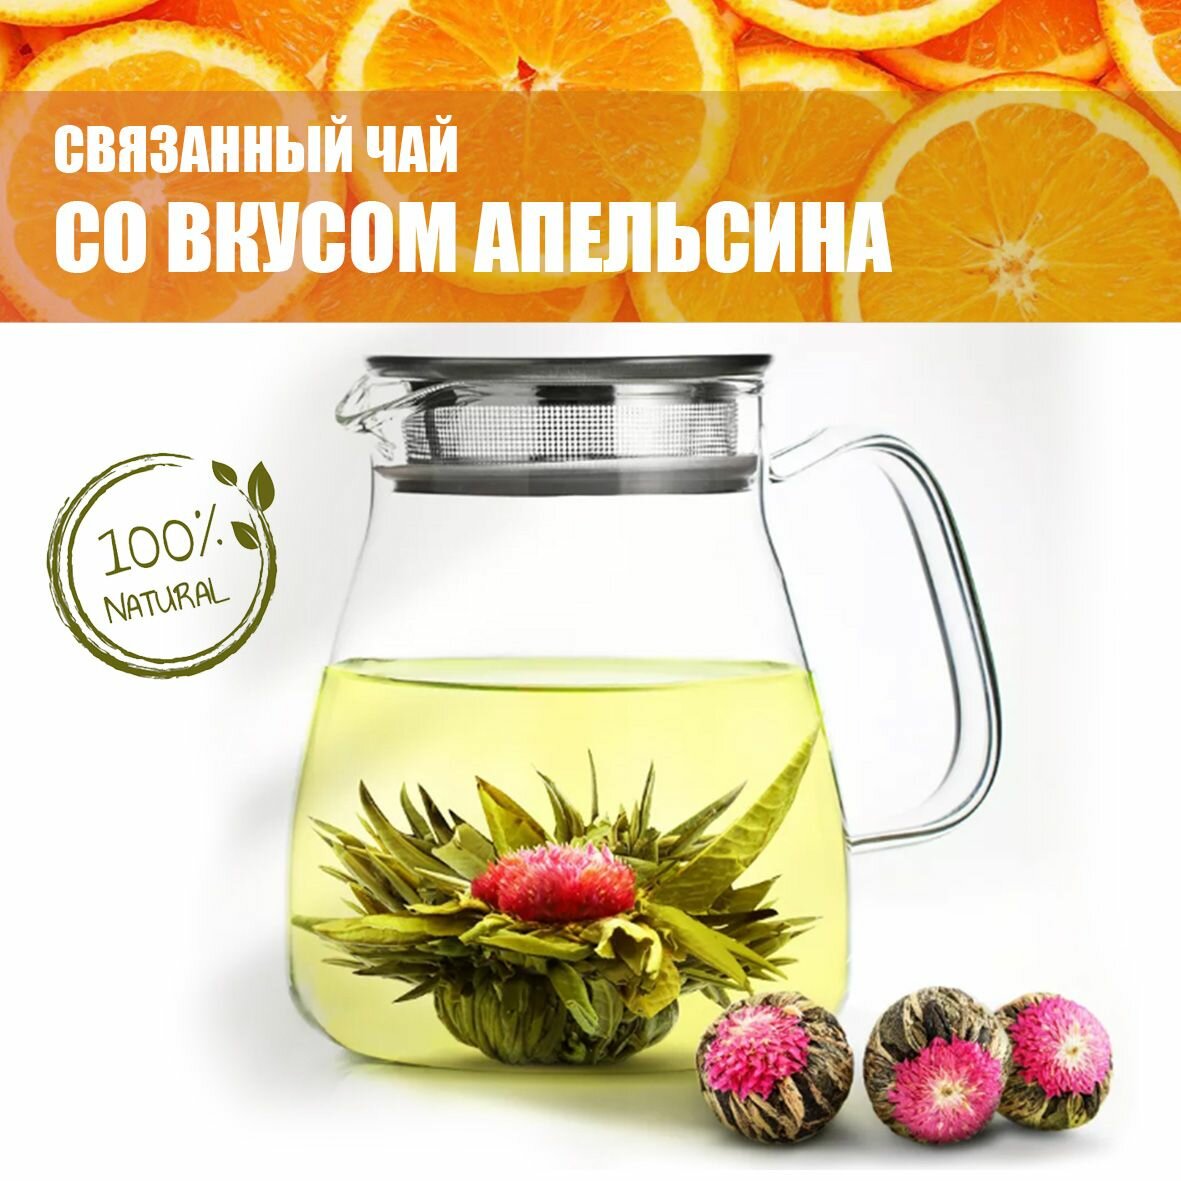 Чай связанный связка-цветок со вкусом апельсина 3 шт